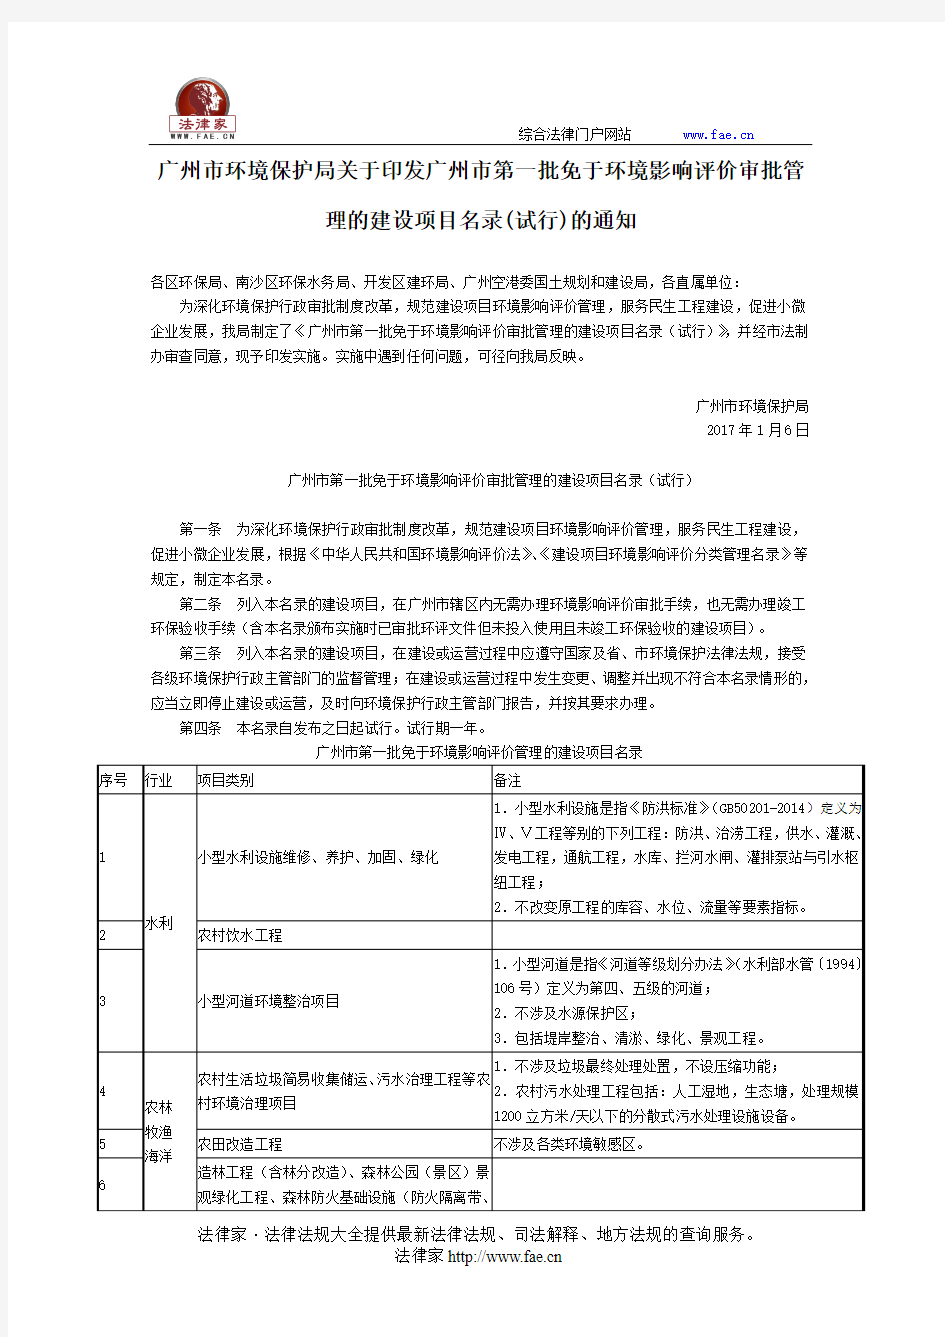 广州市环境保护局关于印发广州市第一批免于环境影响评价审批管理的建设项目名录(试行)的通知-地方规范性文